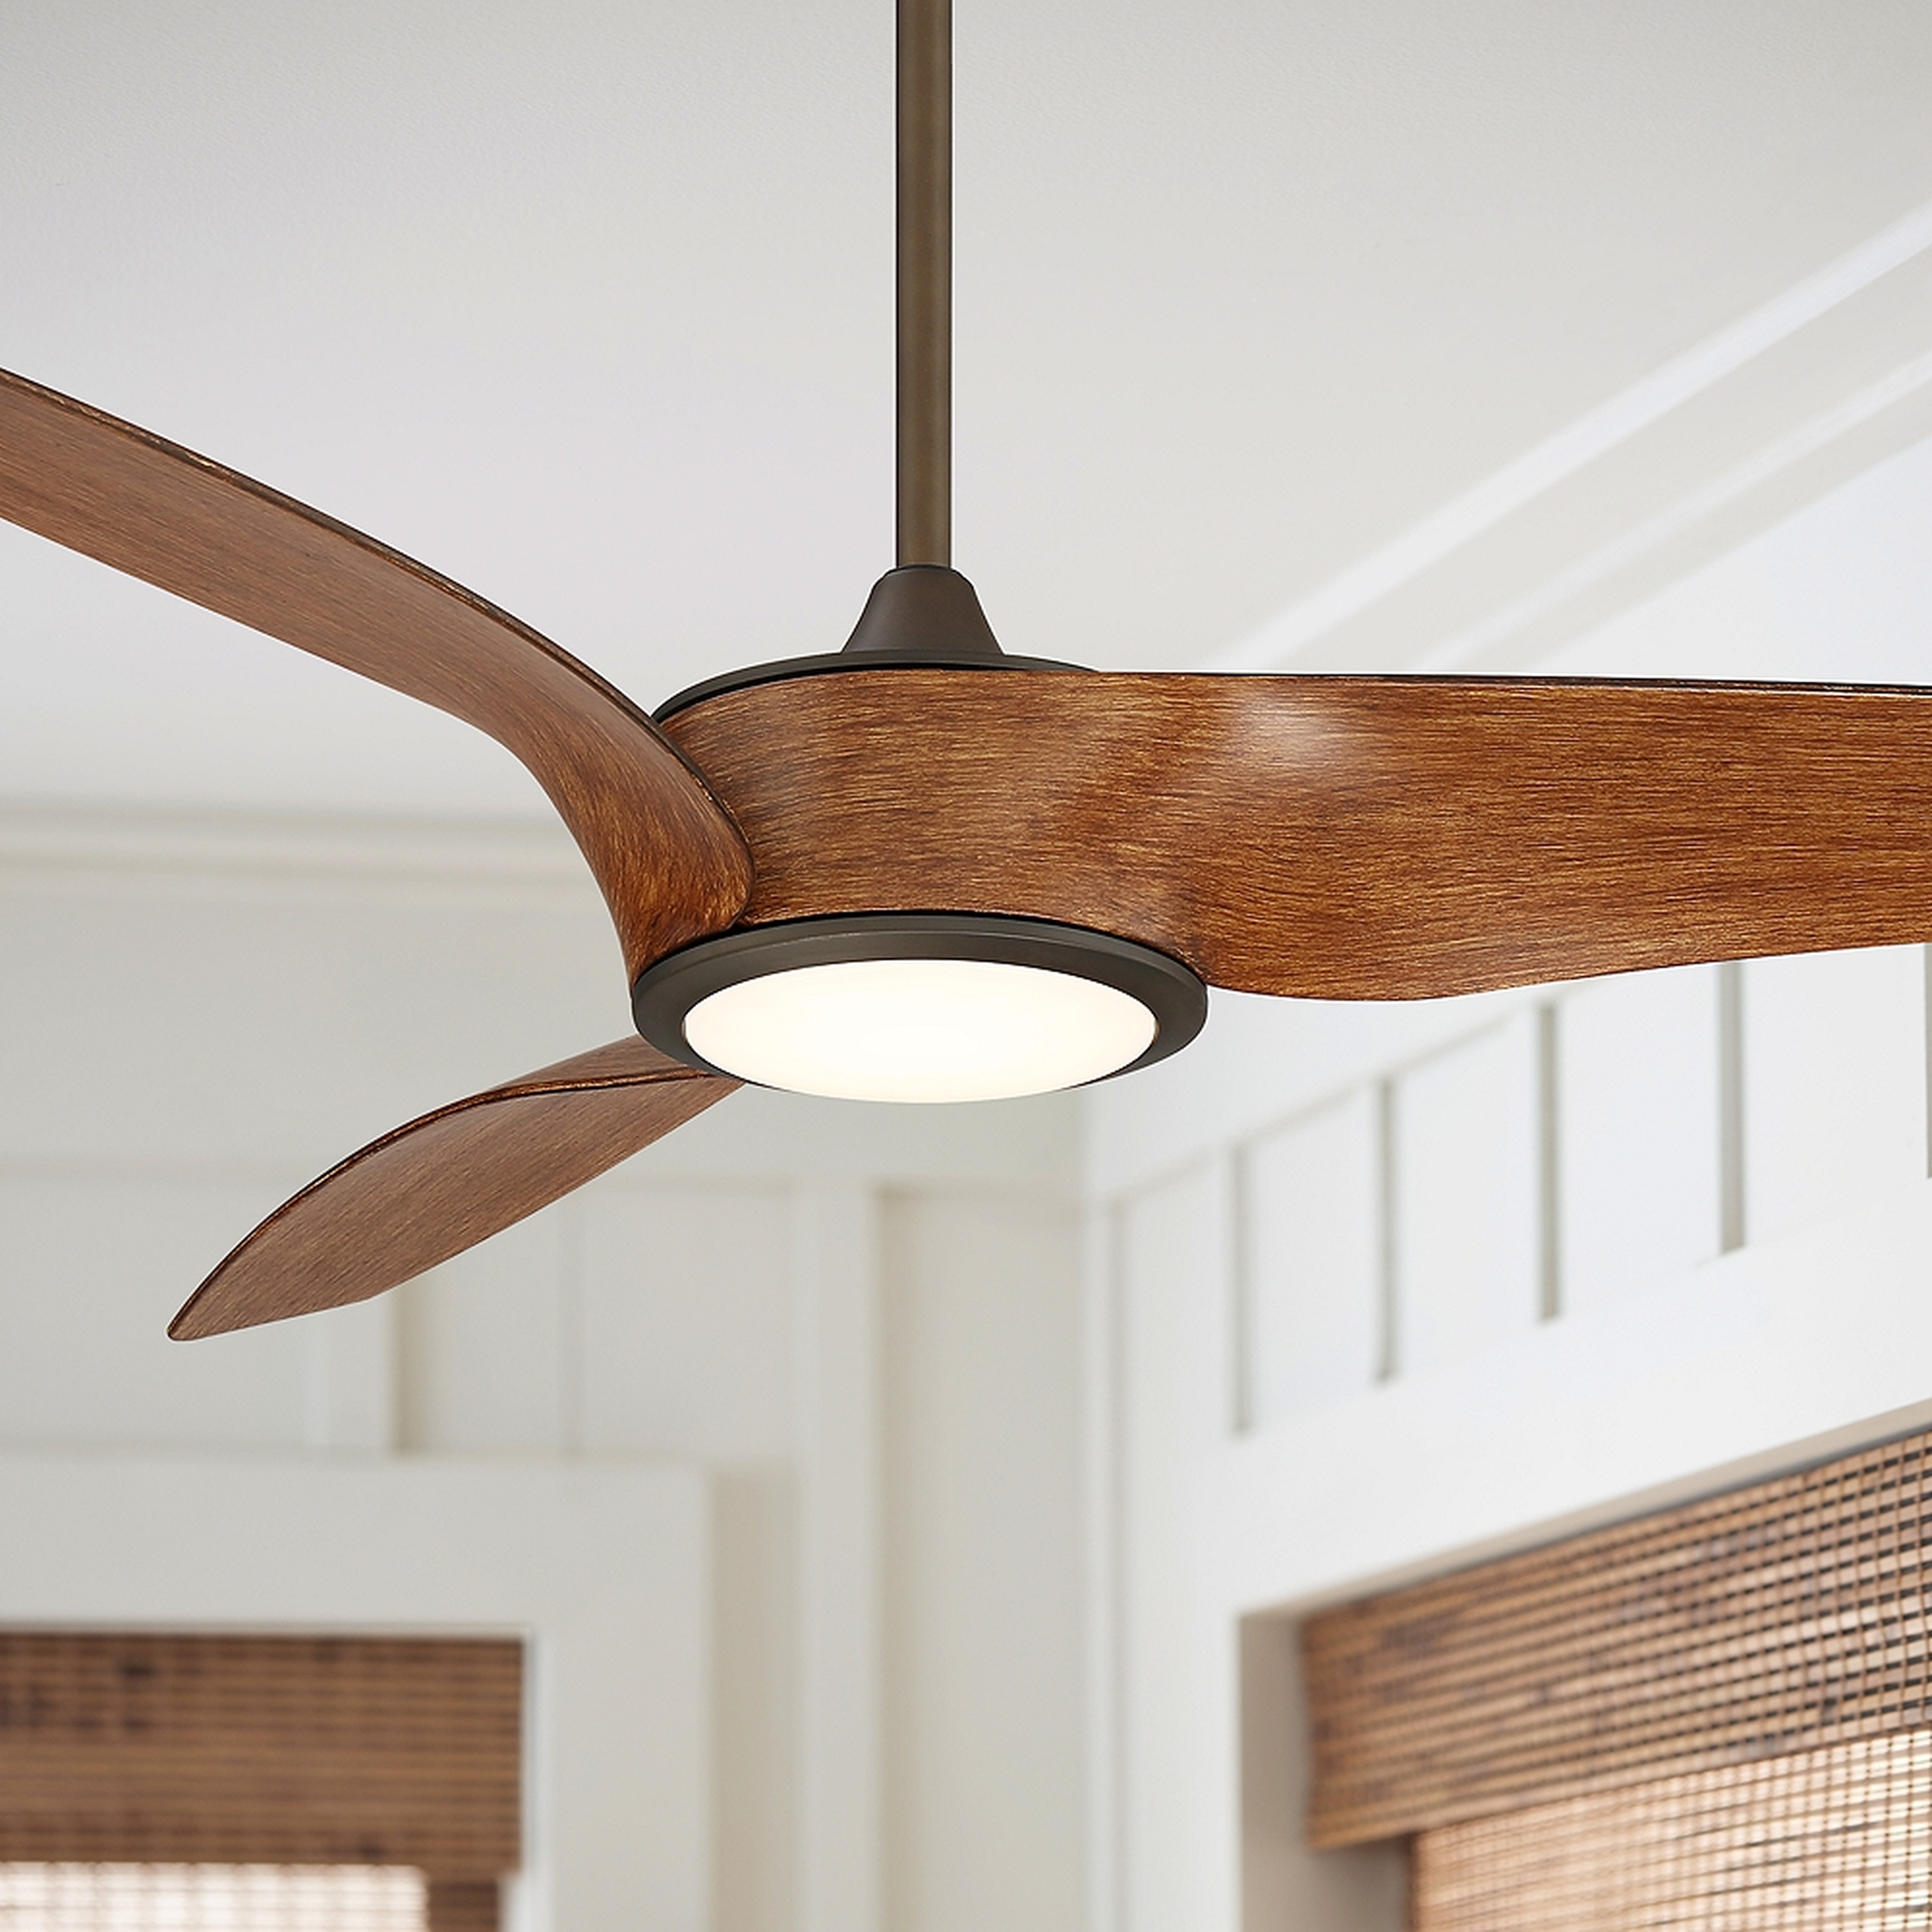 56" Casa Como Bronze and Koa LED Ceiling Fan - Style # 79D73 - Lamps Plus